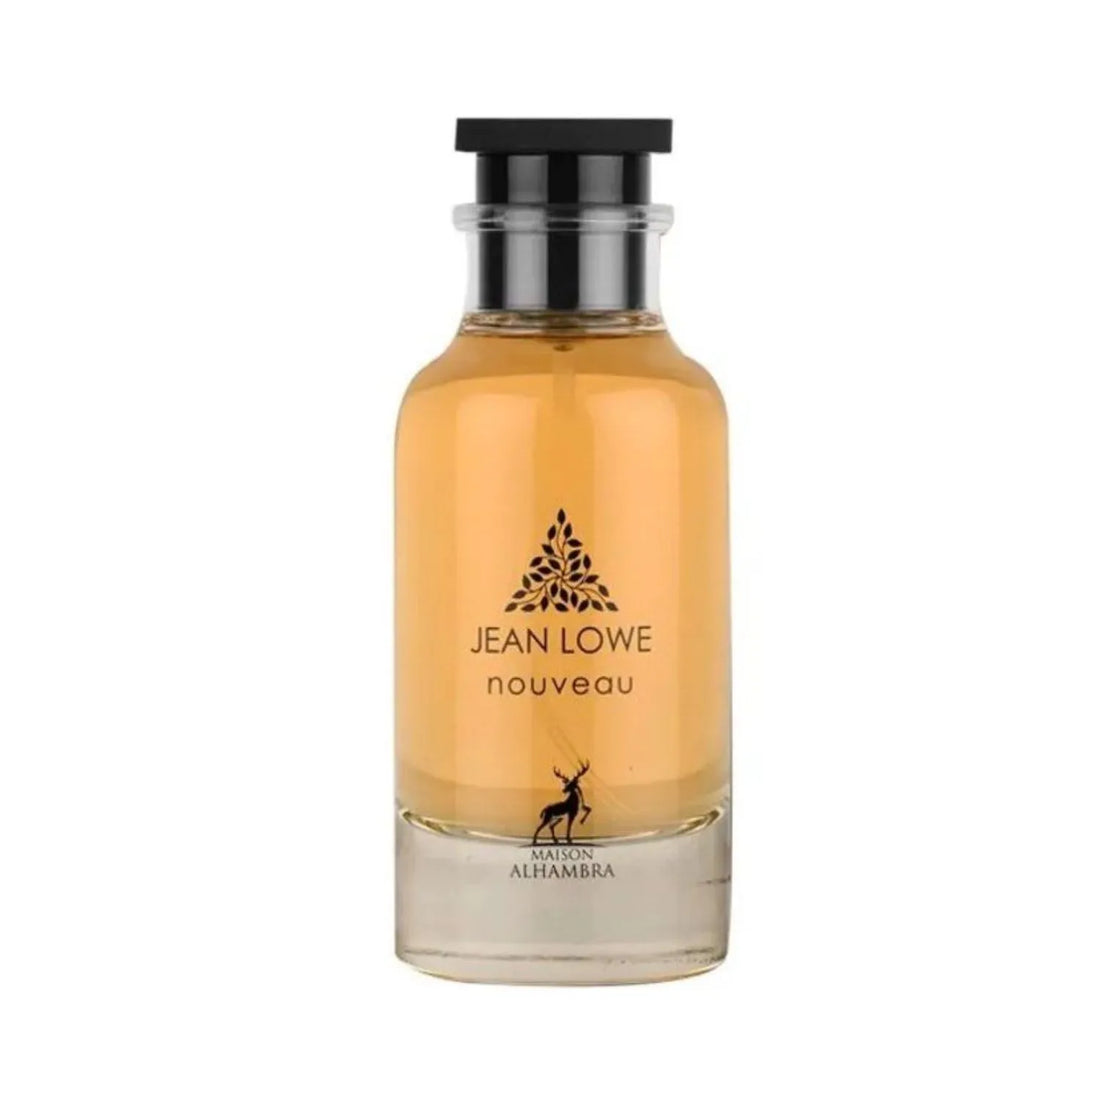 Jean Lowe Nouveau Perfume Bottle